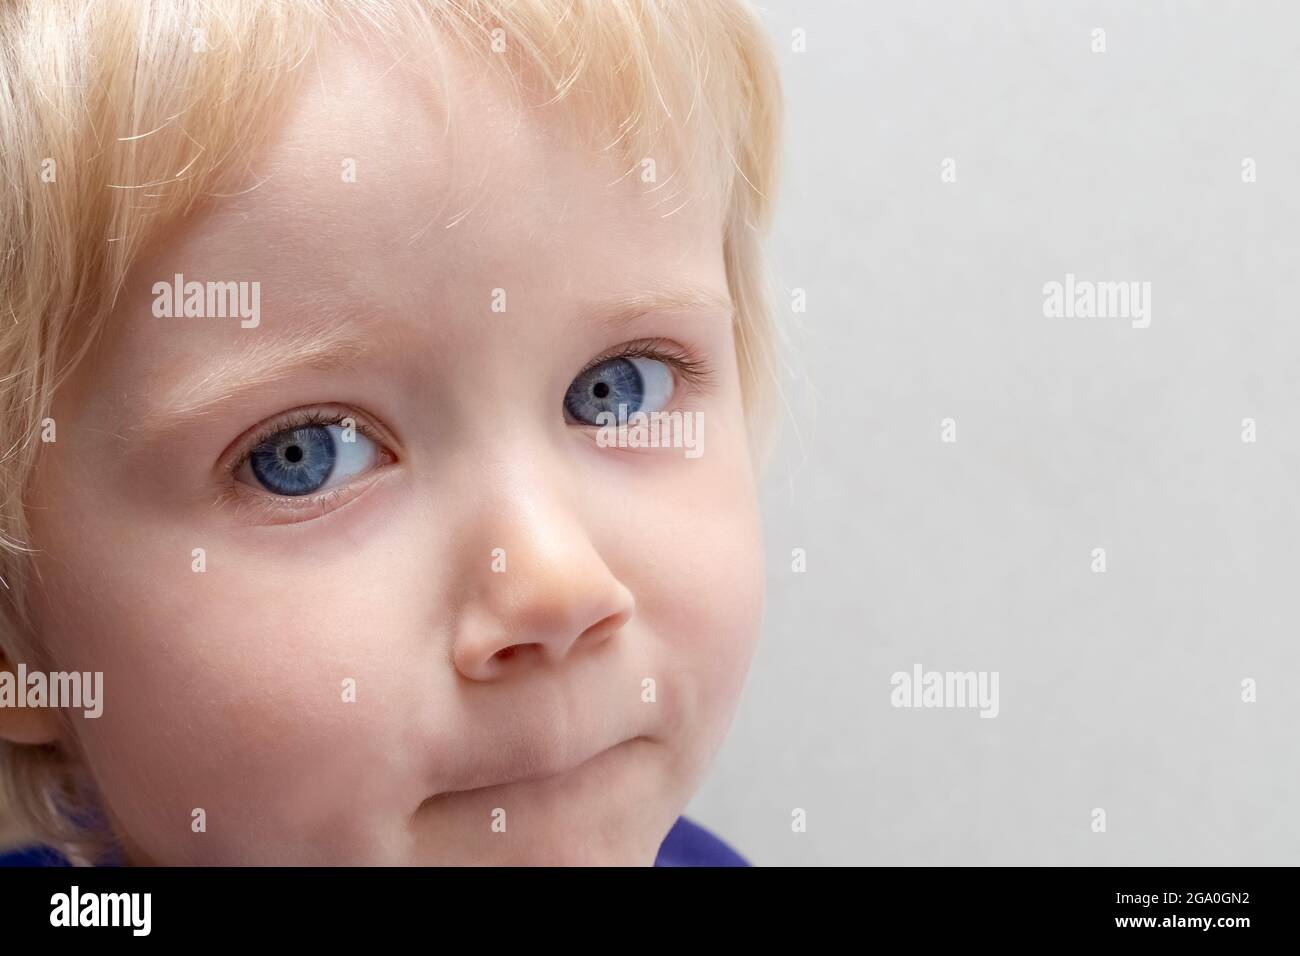 Portrait d'un petit enfant aux cheveux blonds, yeux bleus, peau claire sur fond gris. Copiez l'espace vers la droite. Banque D'Images